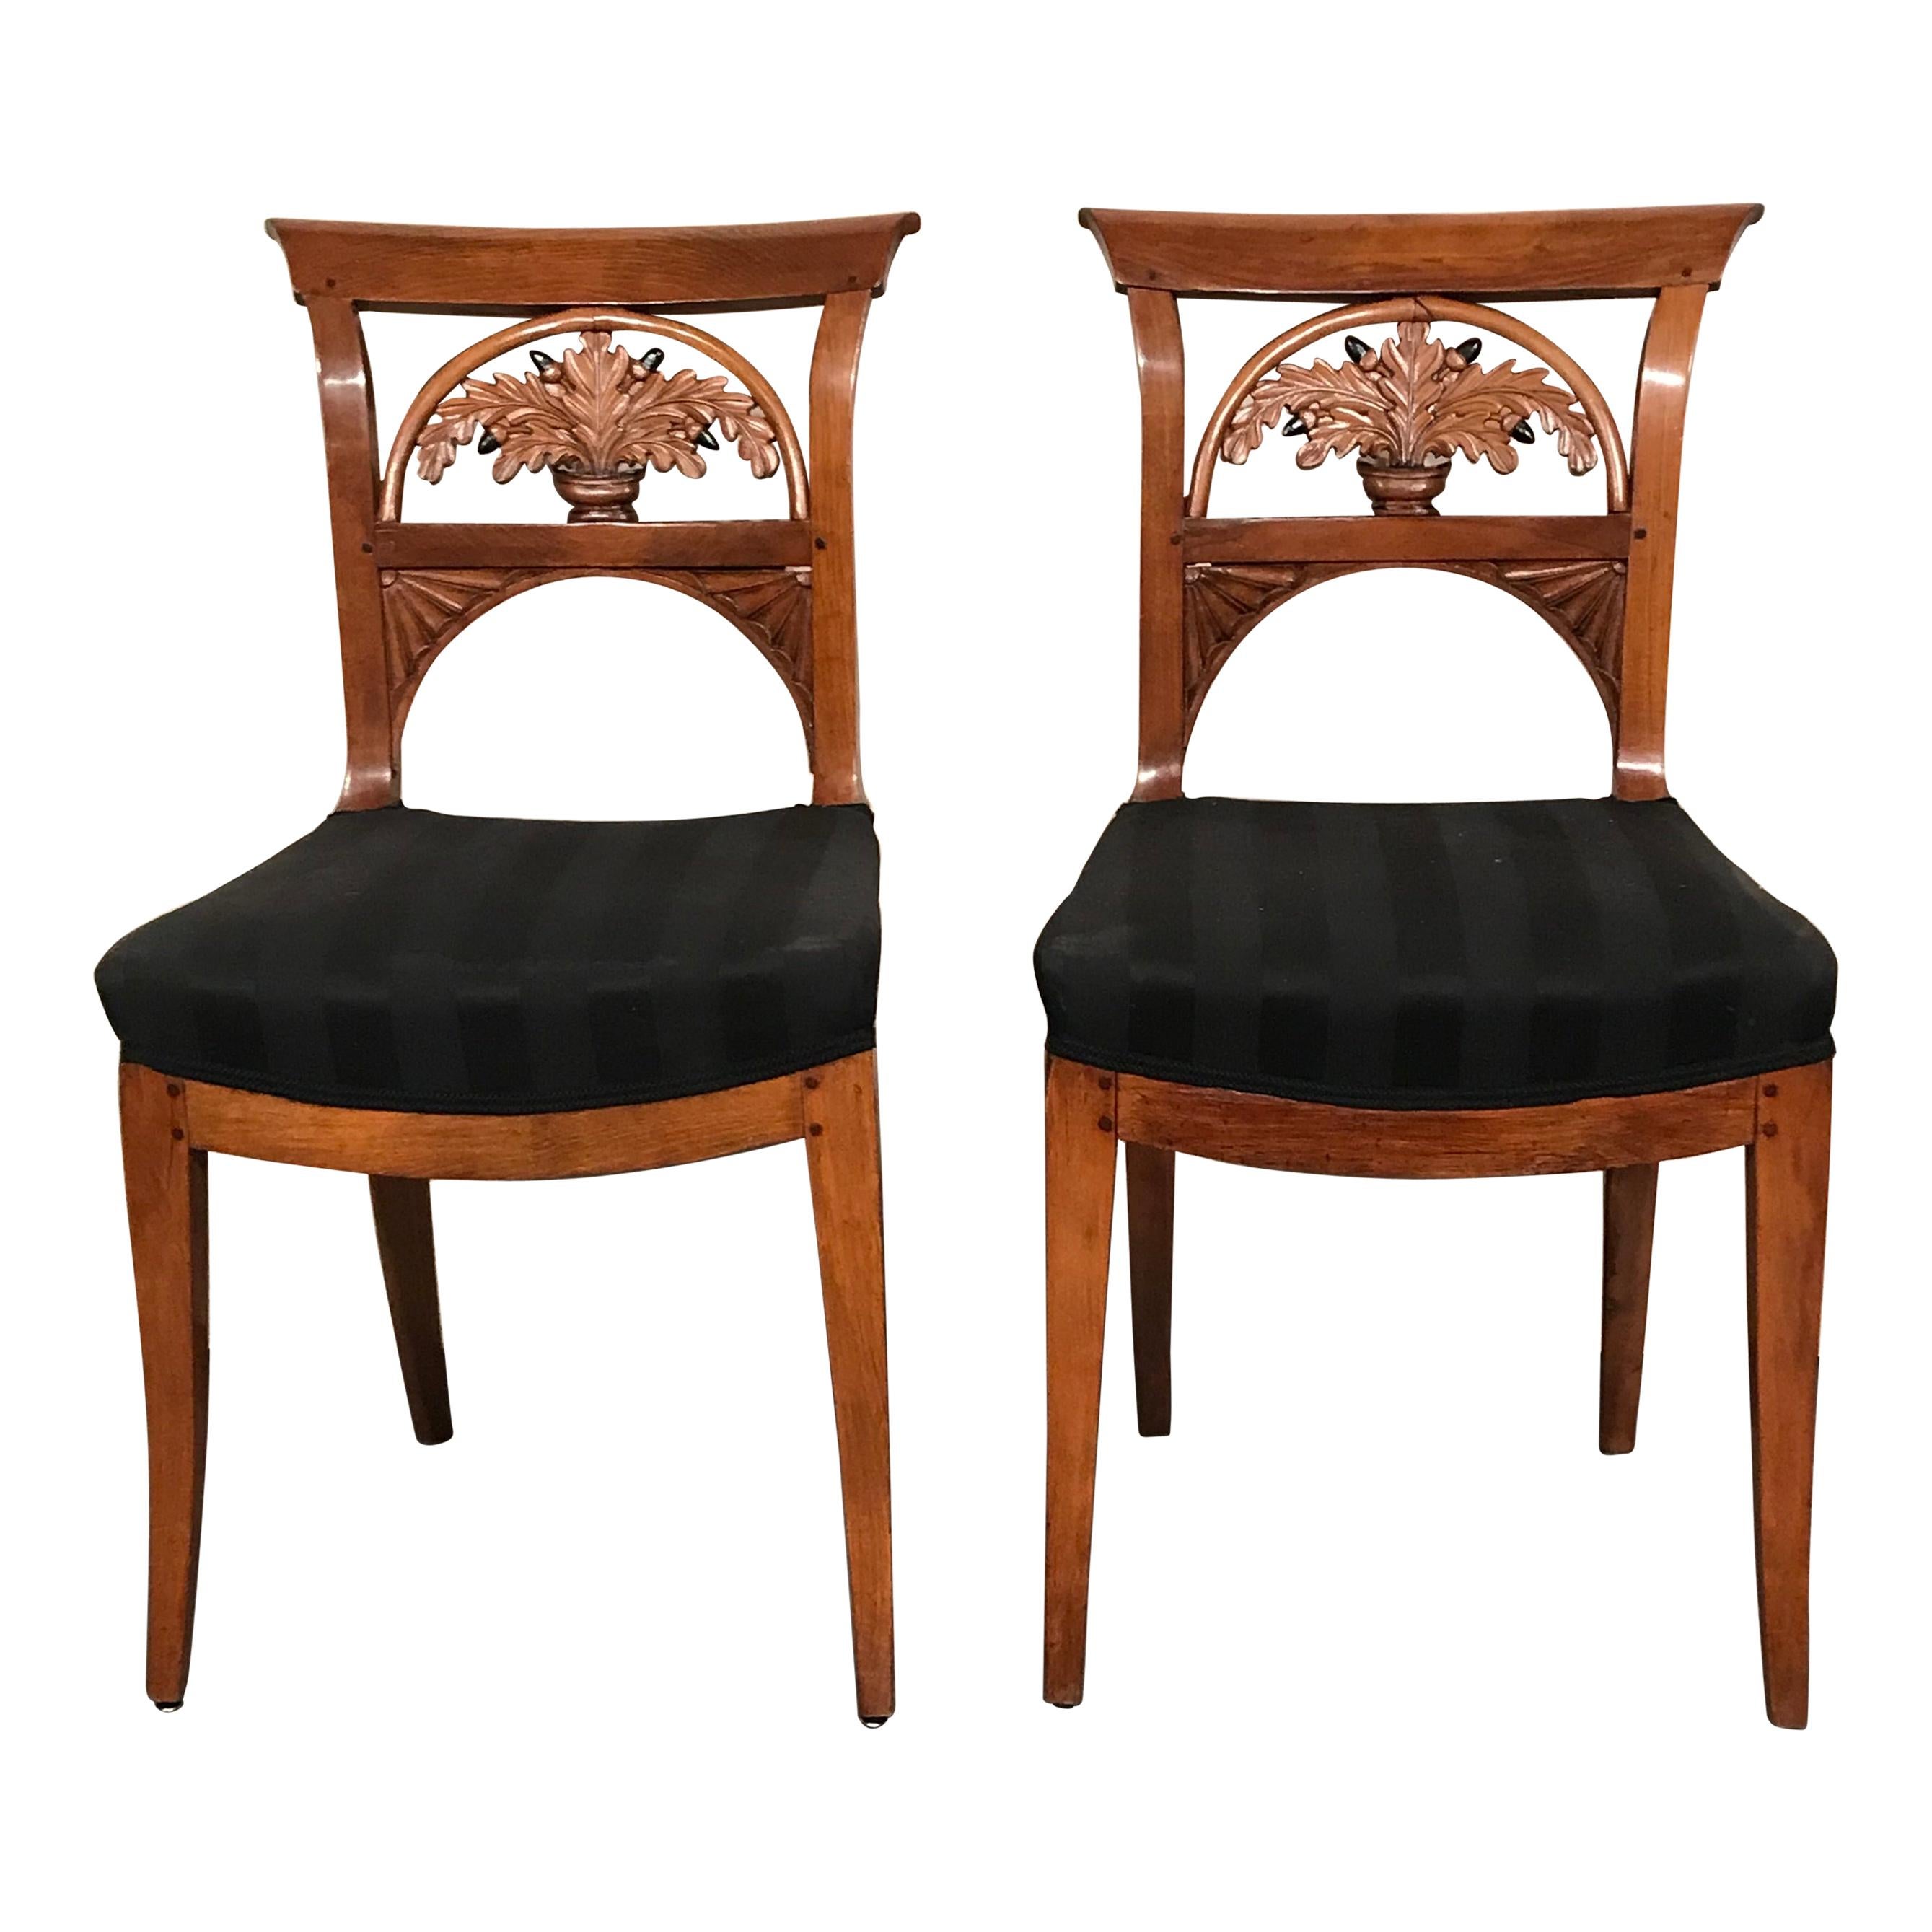 Pair of Neoclassical Chairs, Switzerland, 1820